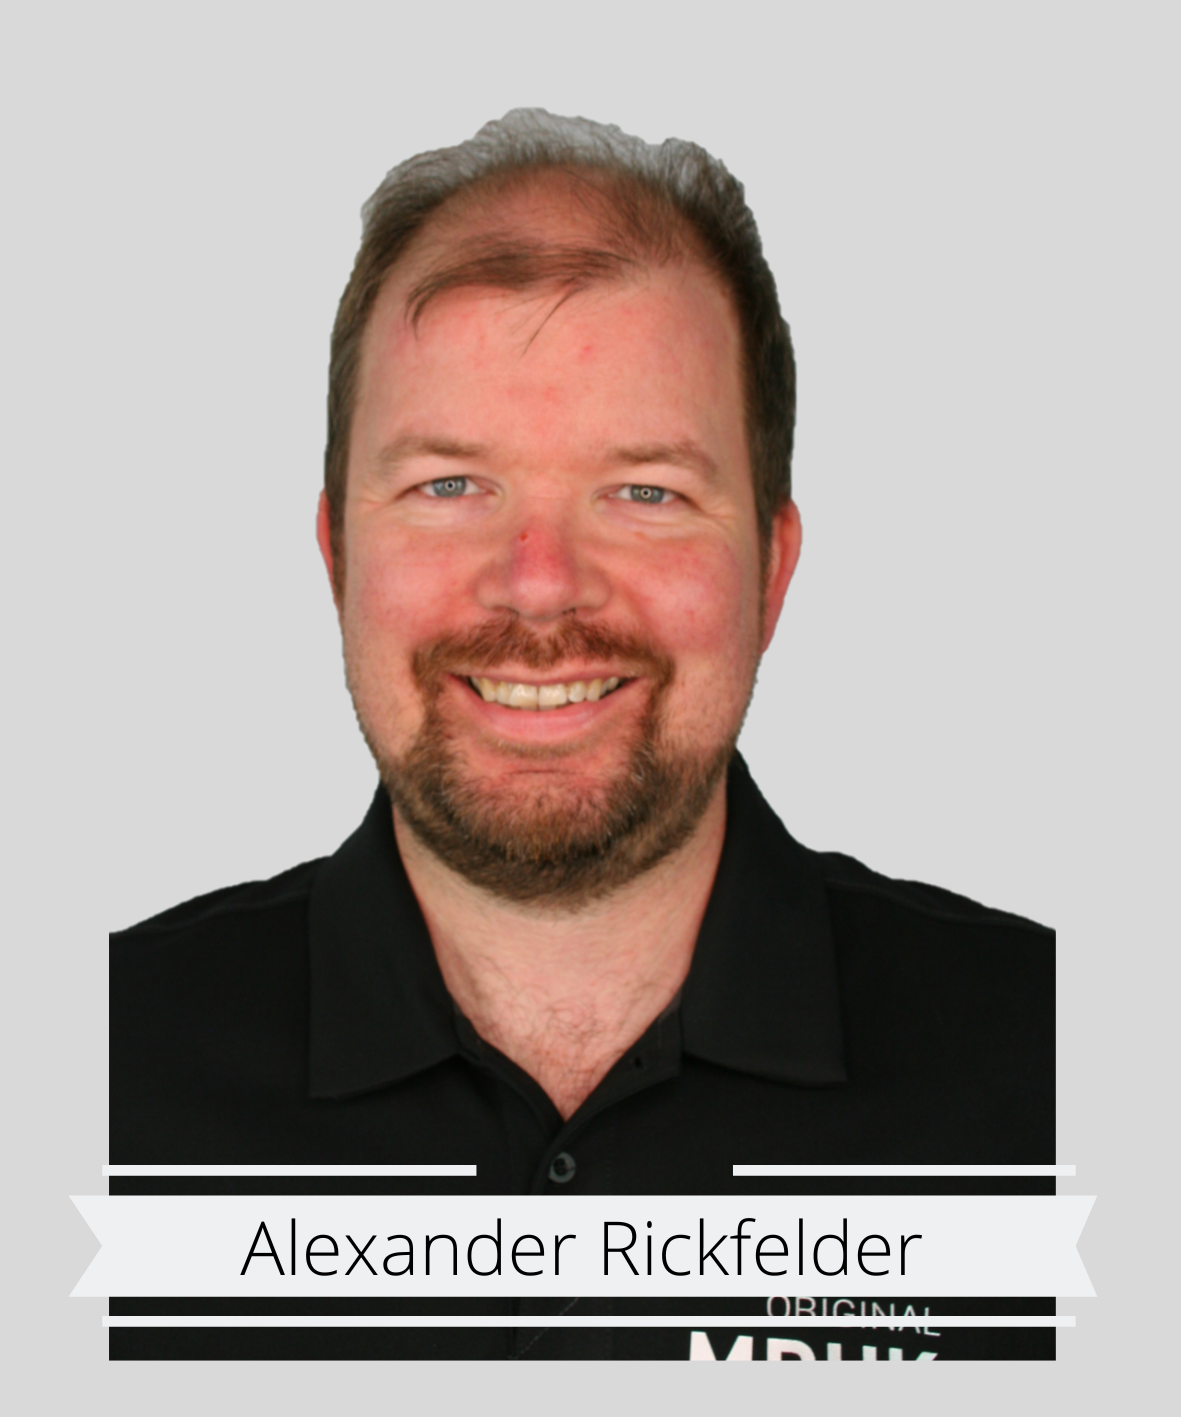 Alexander Rickfelder